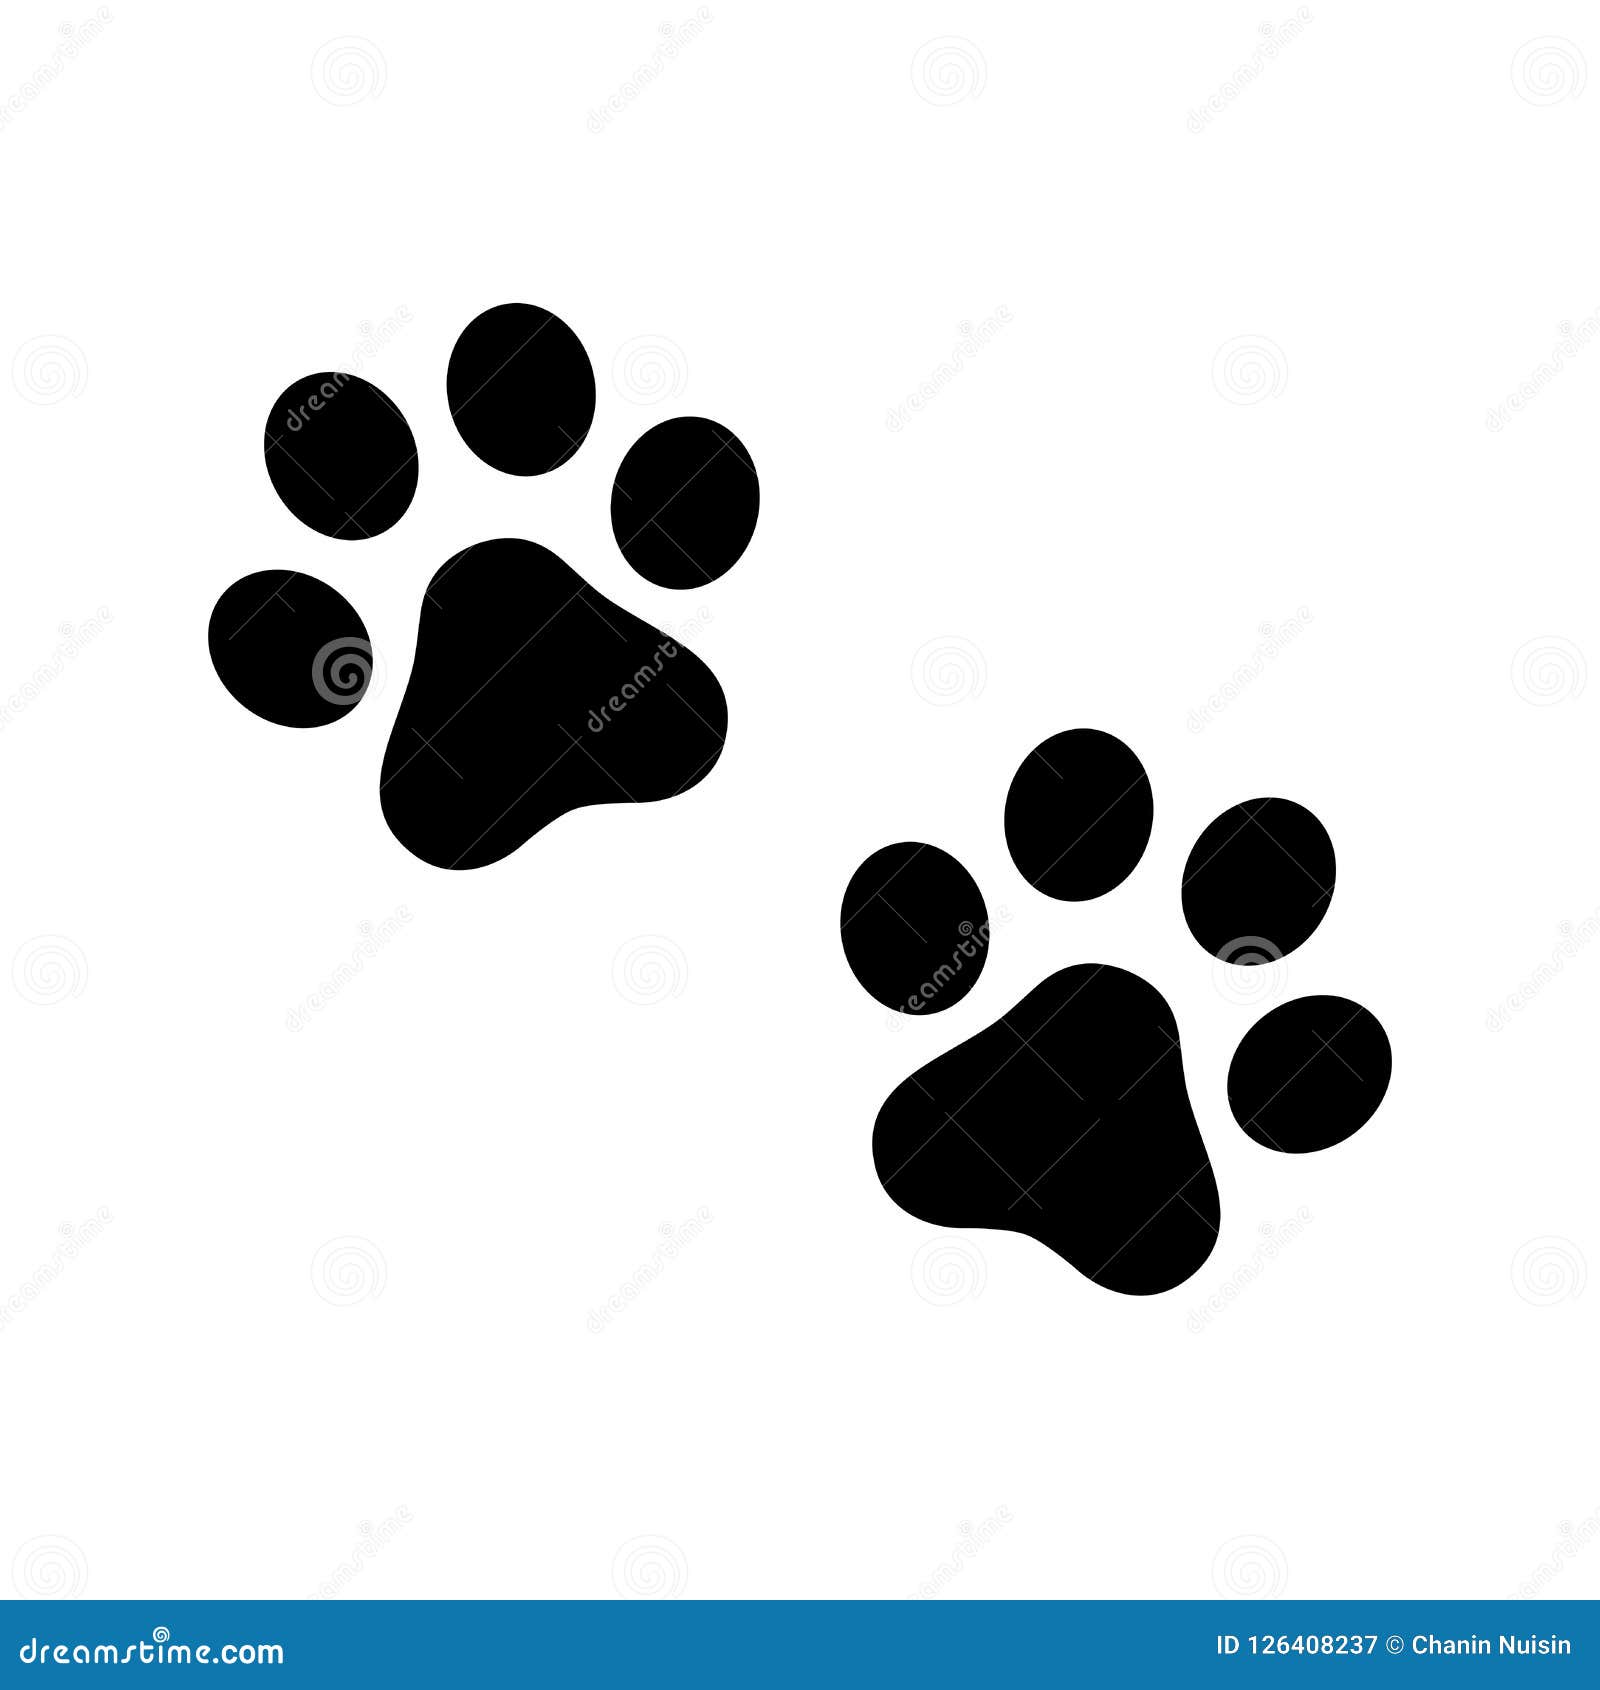 efterspørgsel Eventyrer pakke Dog Paw Vector Footprint Icon Logo Symbol Graphic Cartoon Illustration Cat  French Bulldog Stock Illustration - Illustration of french, footstep:  126408237